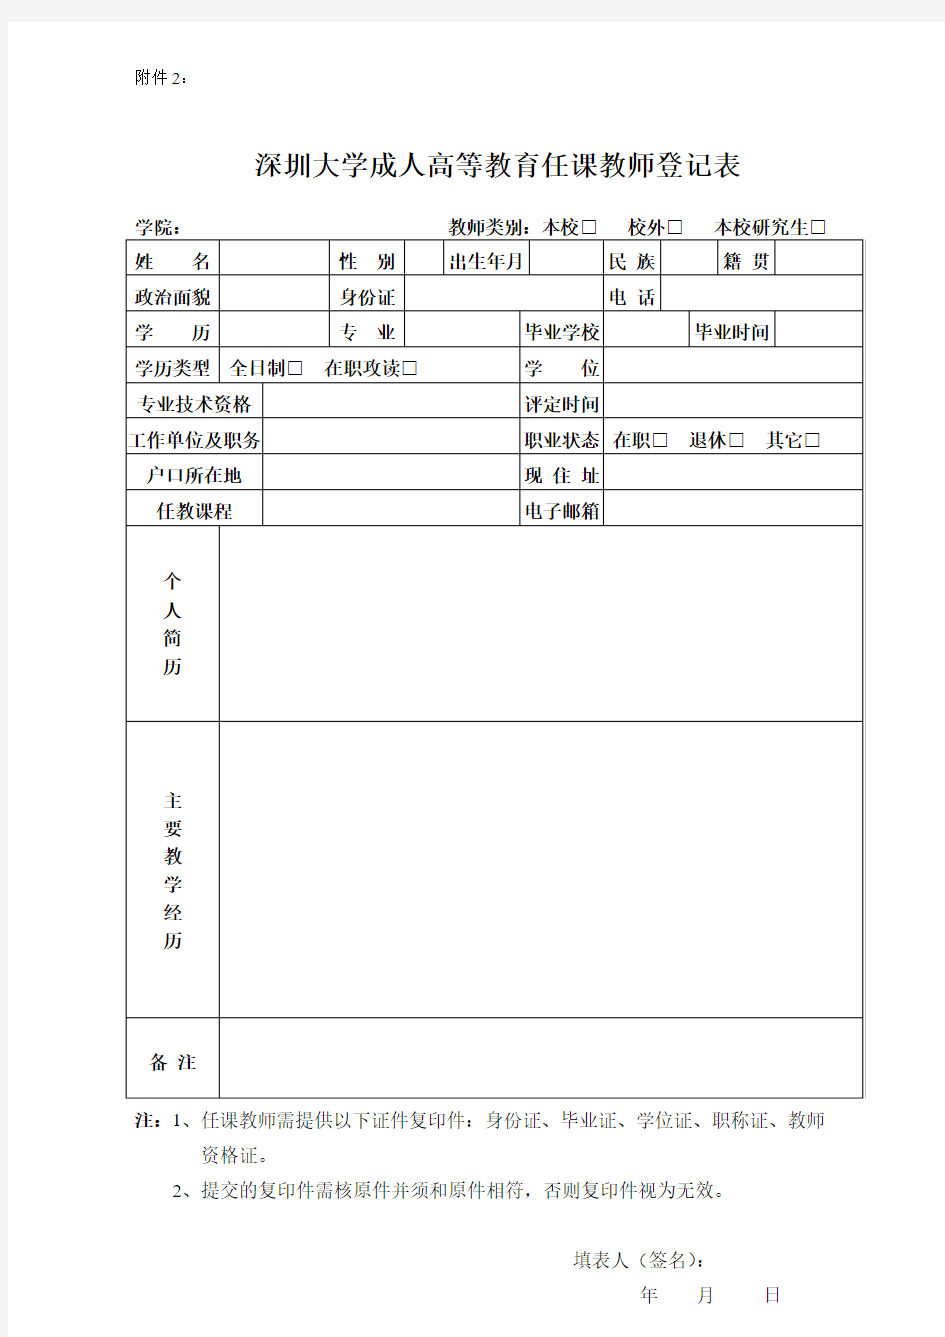 深圳大学继续教育学院兼职教师聘用登记表